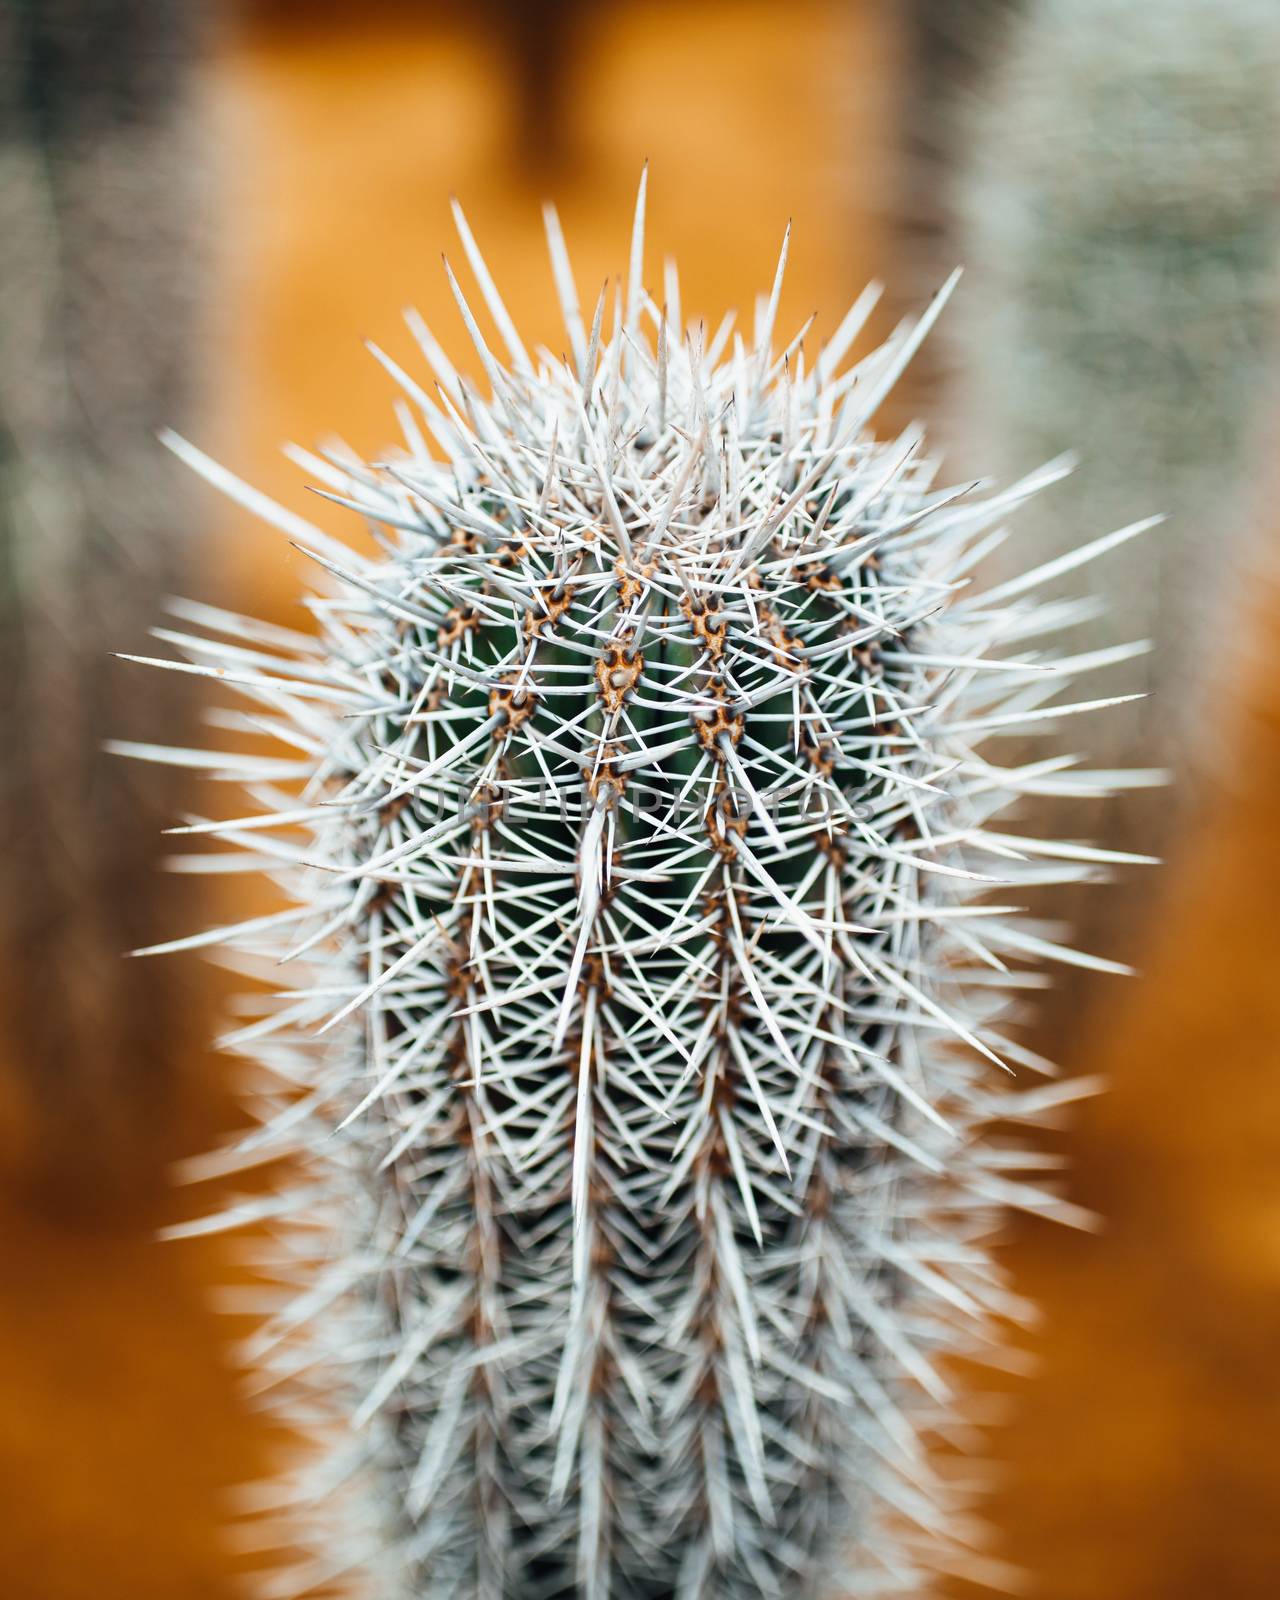 huge cactus thorns, closeup view